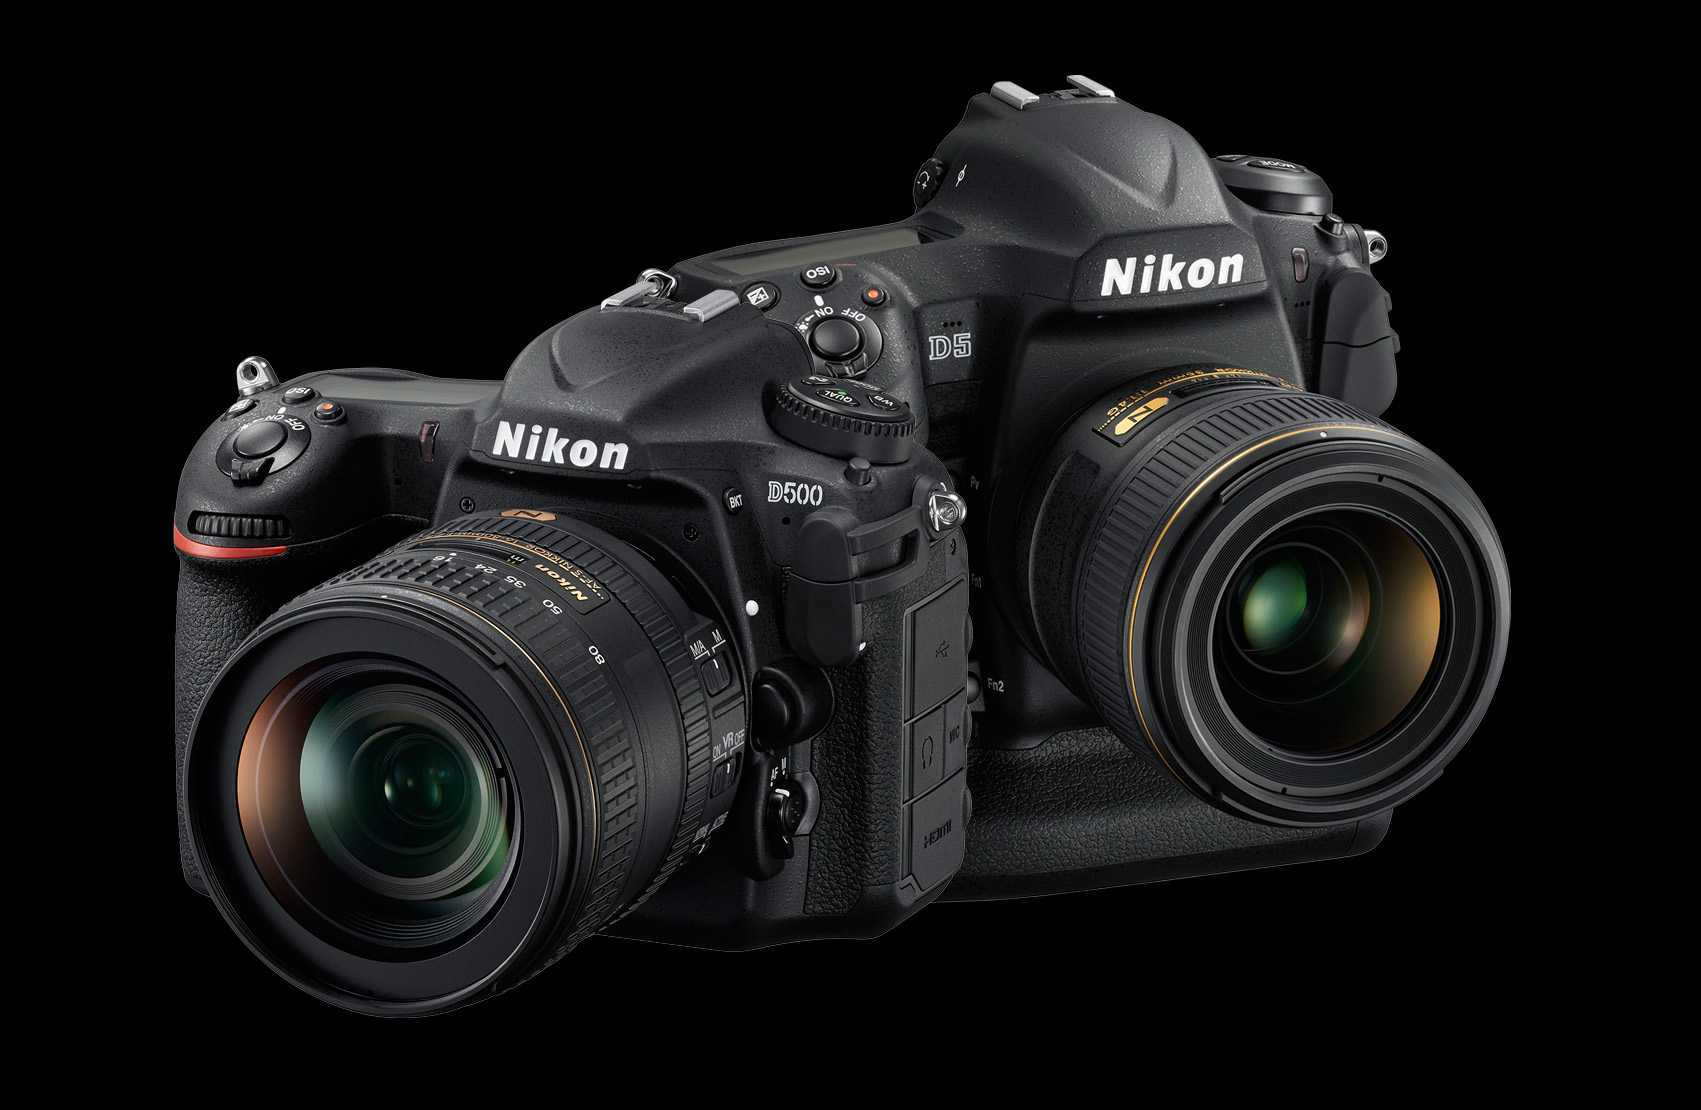 Идеальный dslr, nikon d500 – обзор фотокамеры с отличными характеристиками